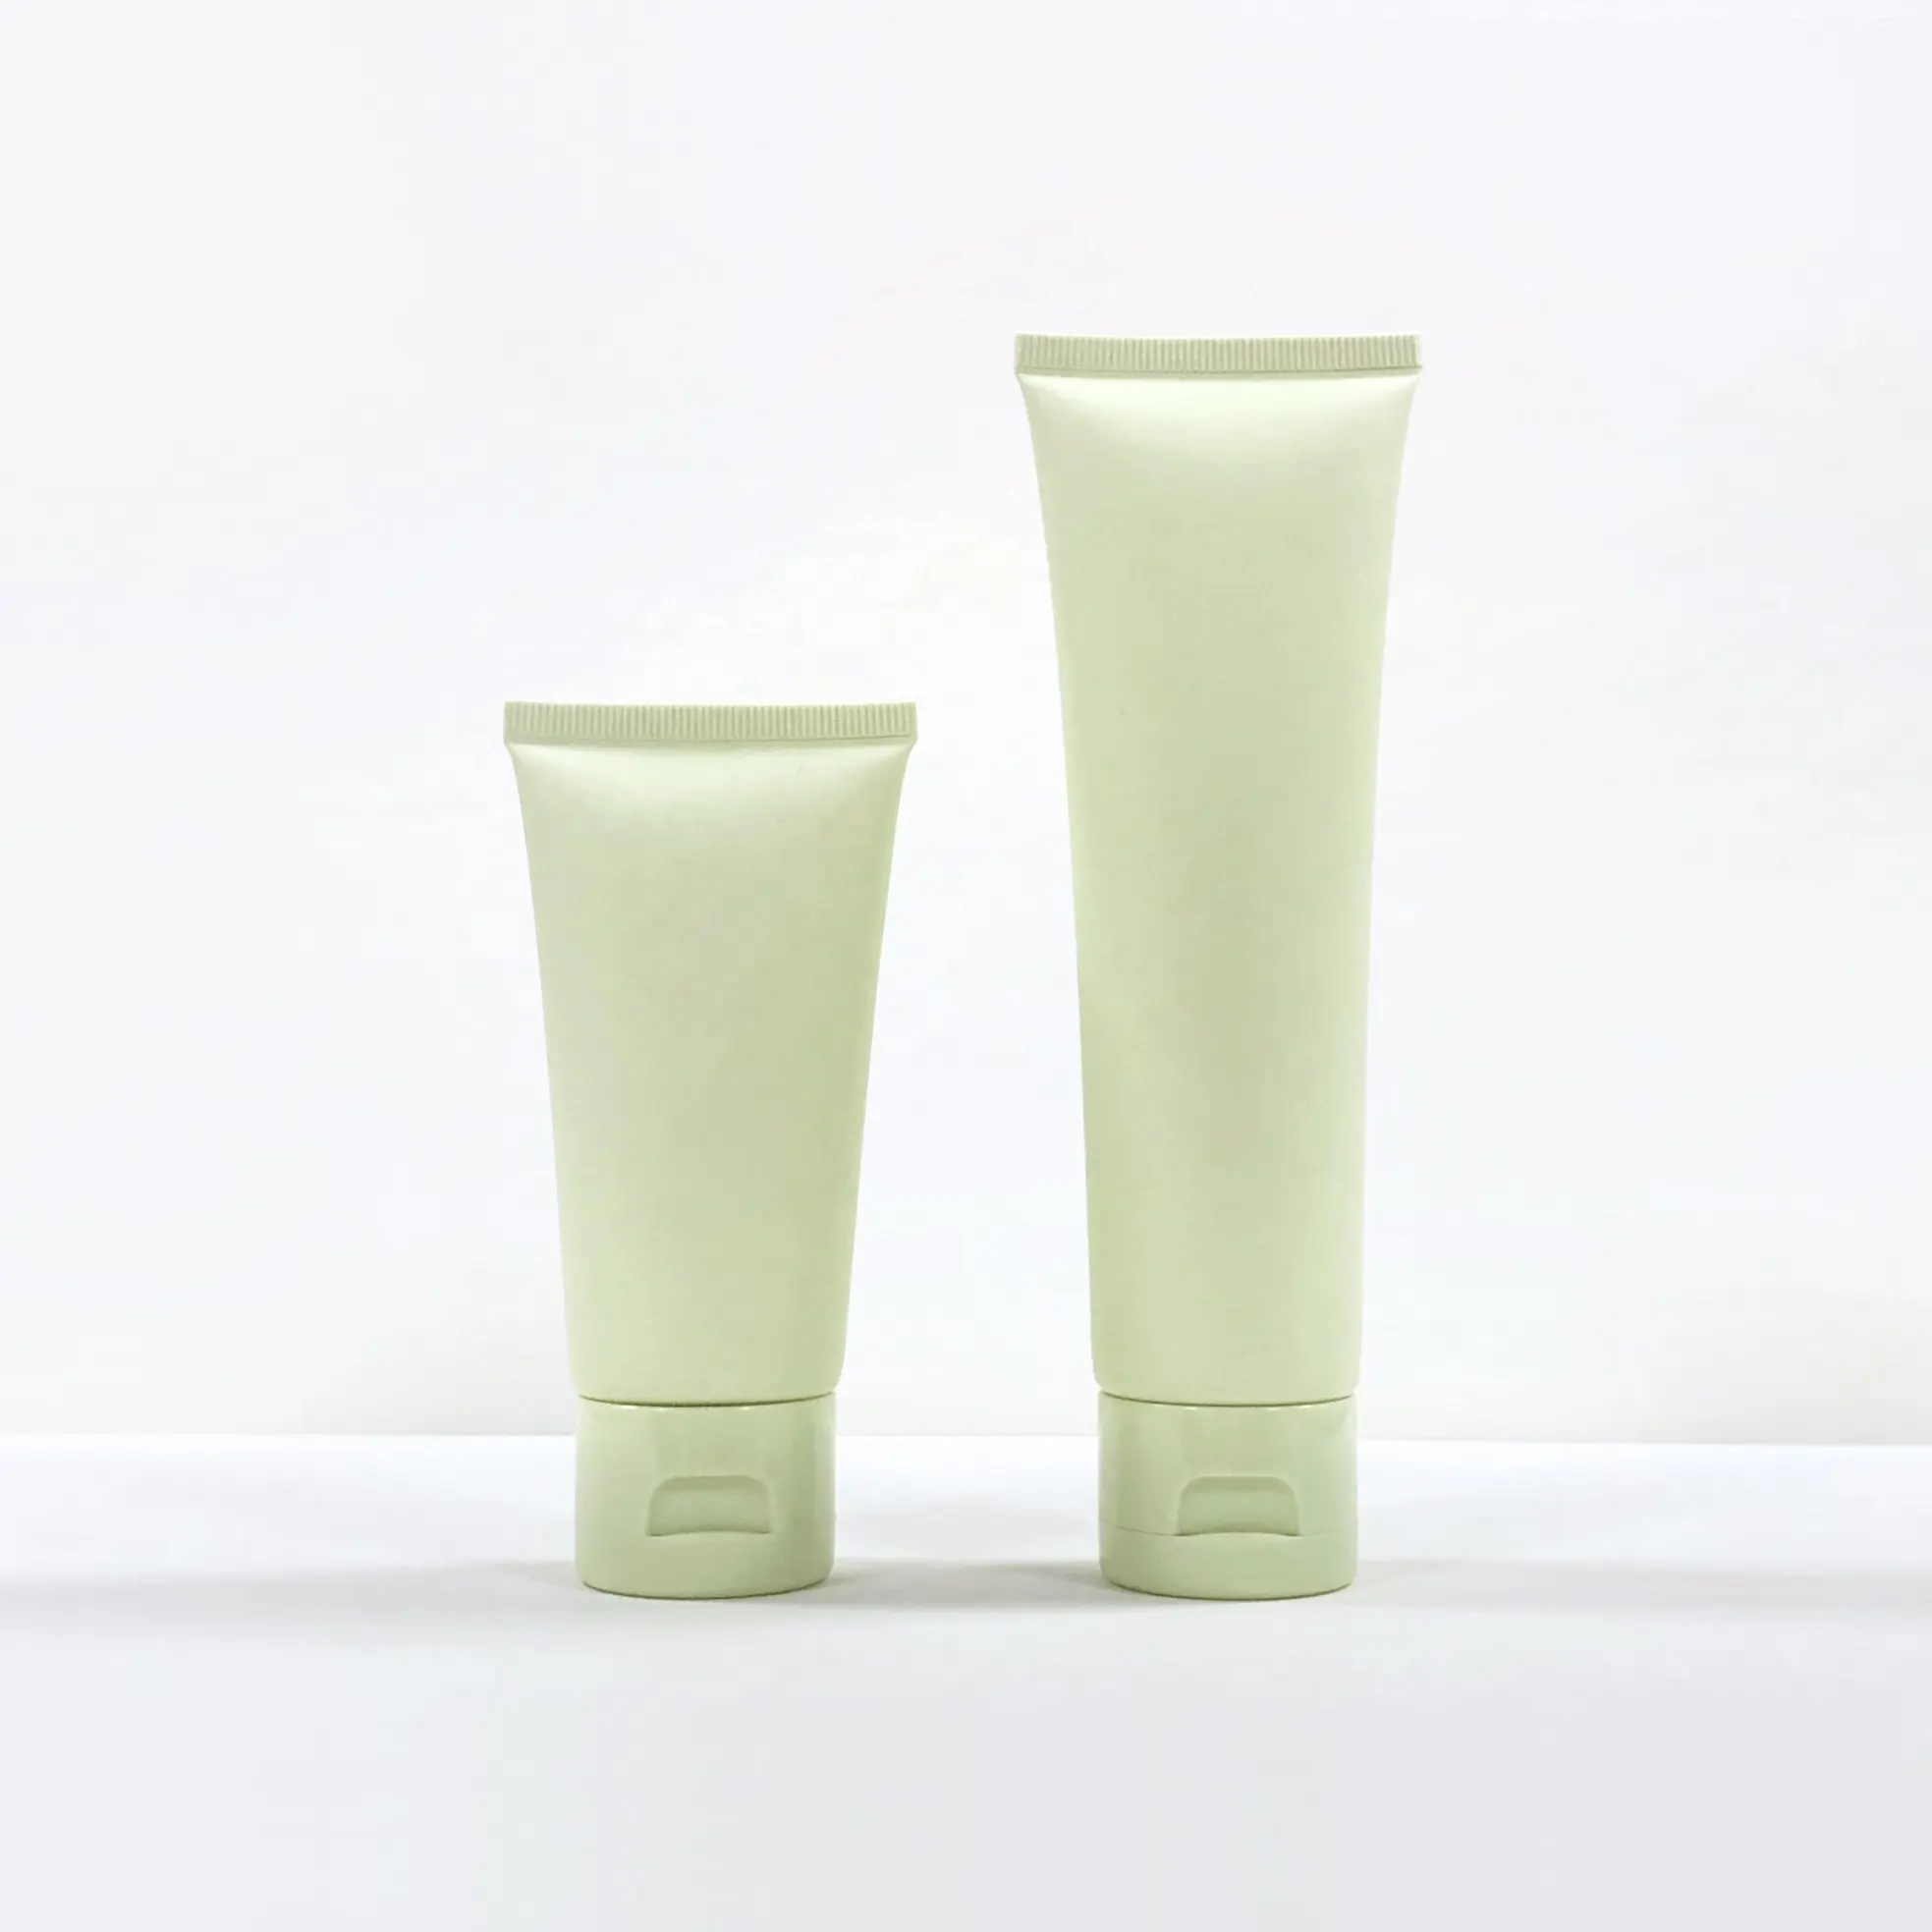 Tubo cosmético de plástico mate verde claro de 100g personalizado para limpiador facial y embalaje de crema de manos Producto en stock